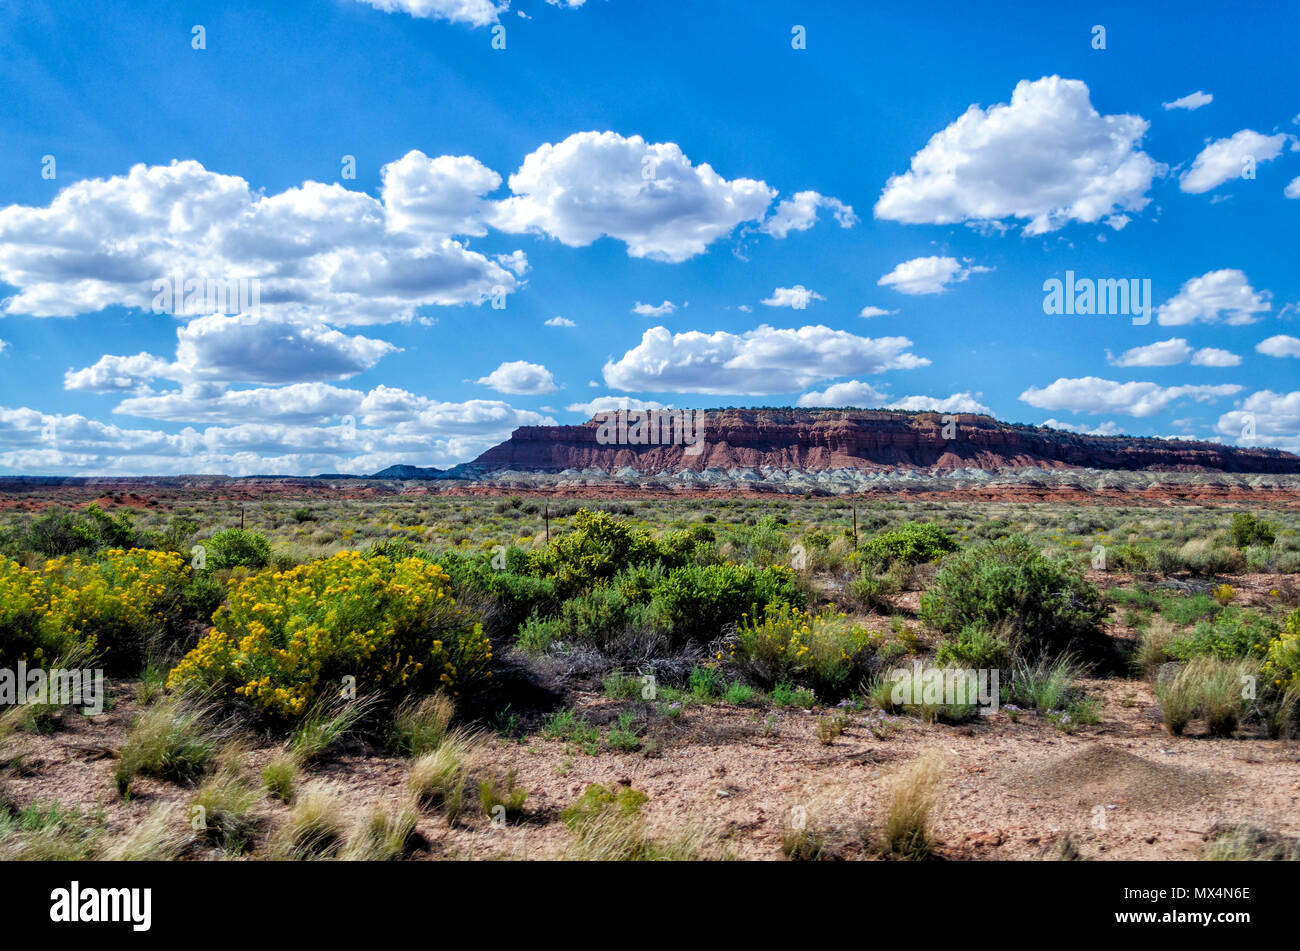 Vasto campo verde con cespugli e fiori con colorati stratificato altopiano di roccia in background sotto il cielo blu con soffici nuvole bianche. Foto Stock